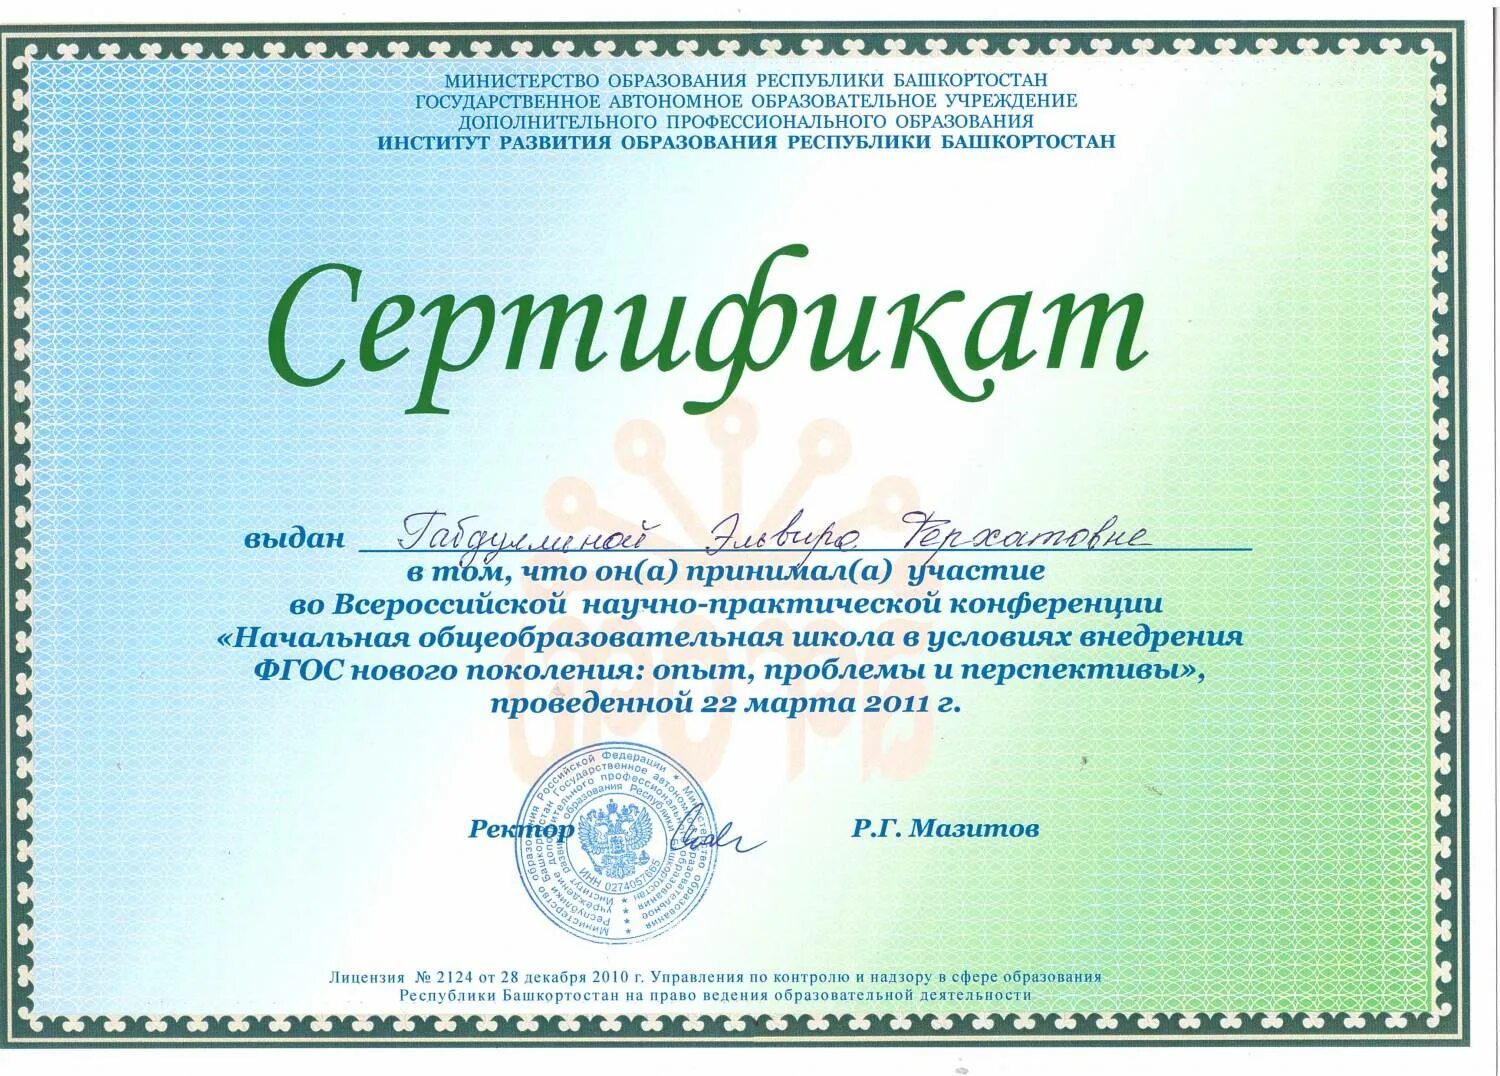 Сертификат ИРО РБ. Институт развития образования Республики Башкортостан. Сертификат об образовании. Сертификат за участие.